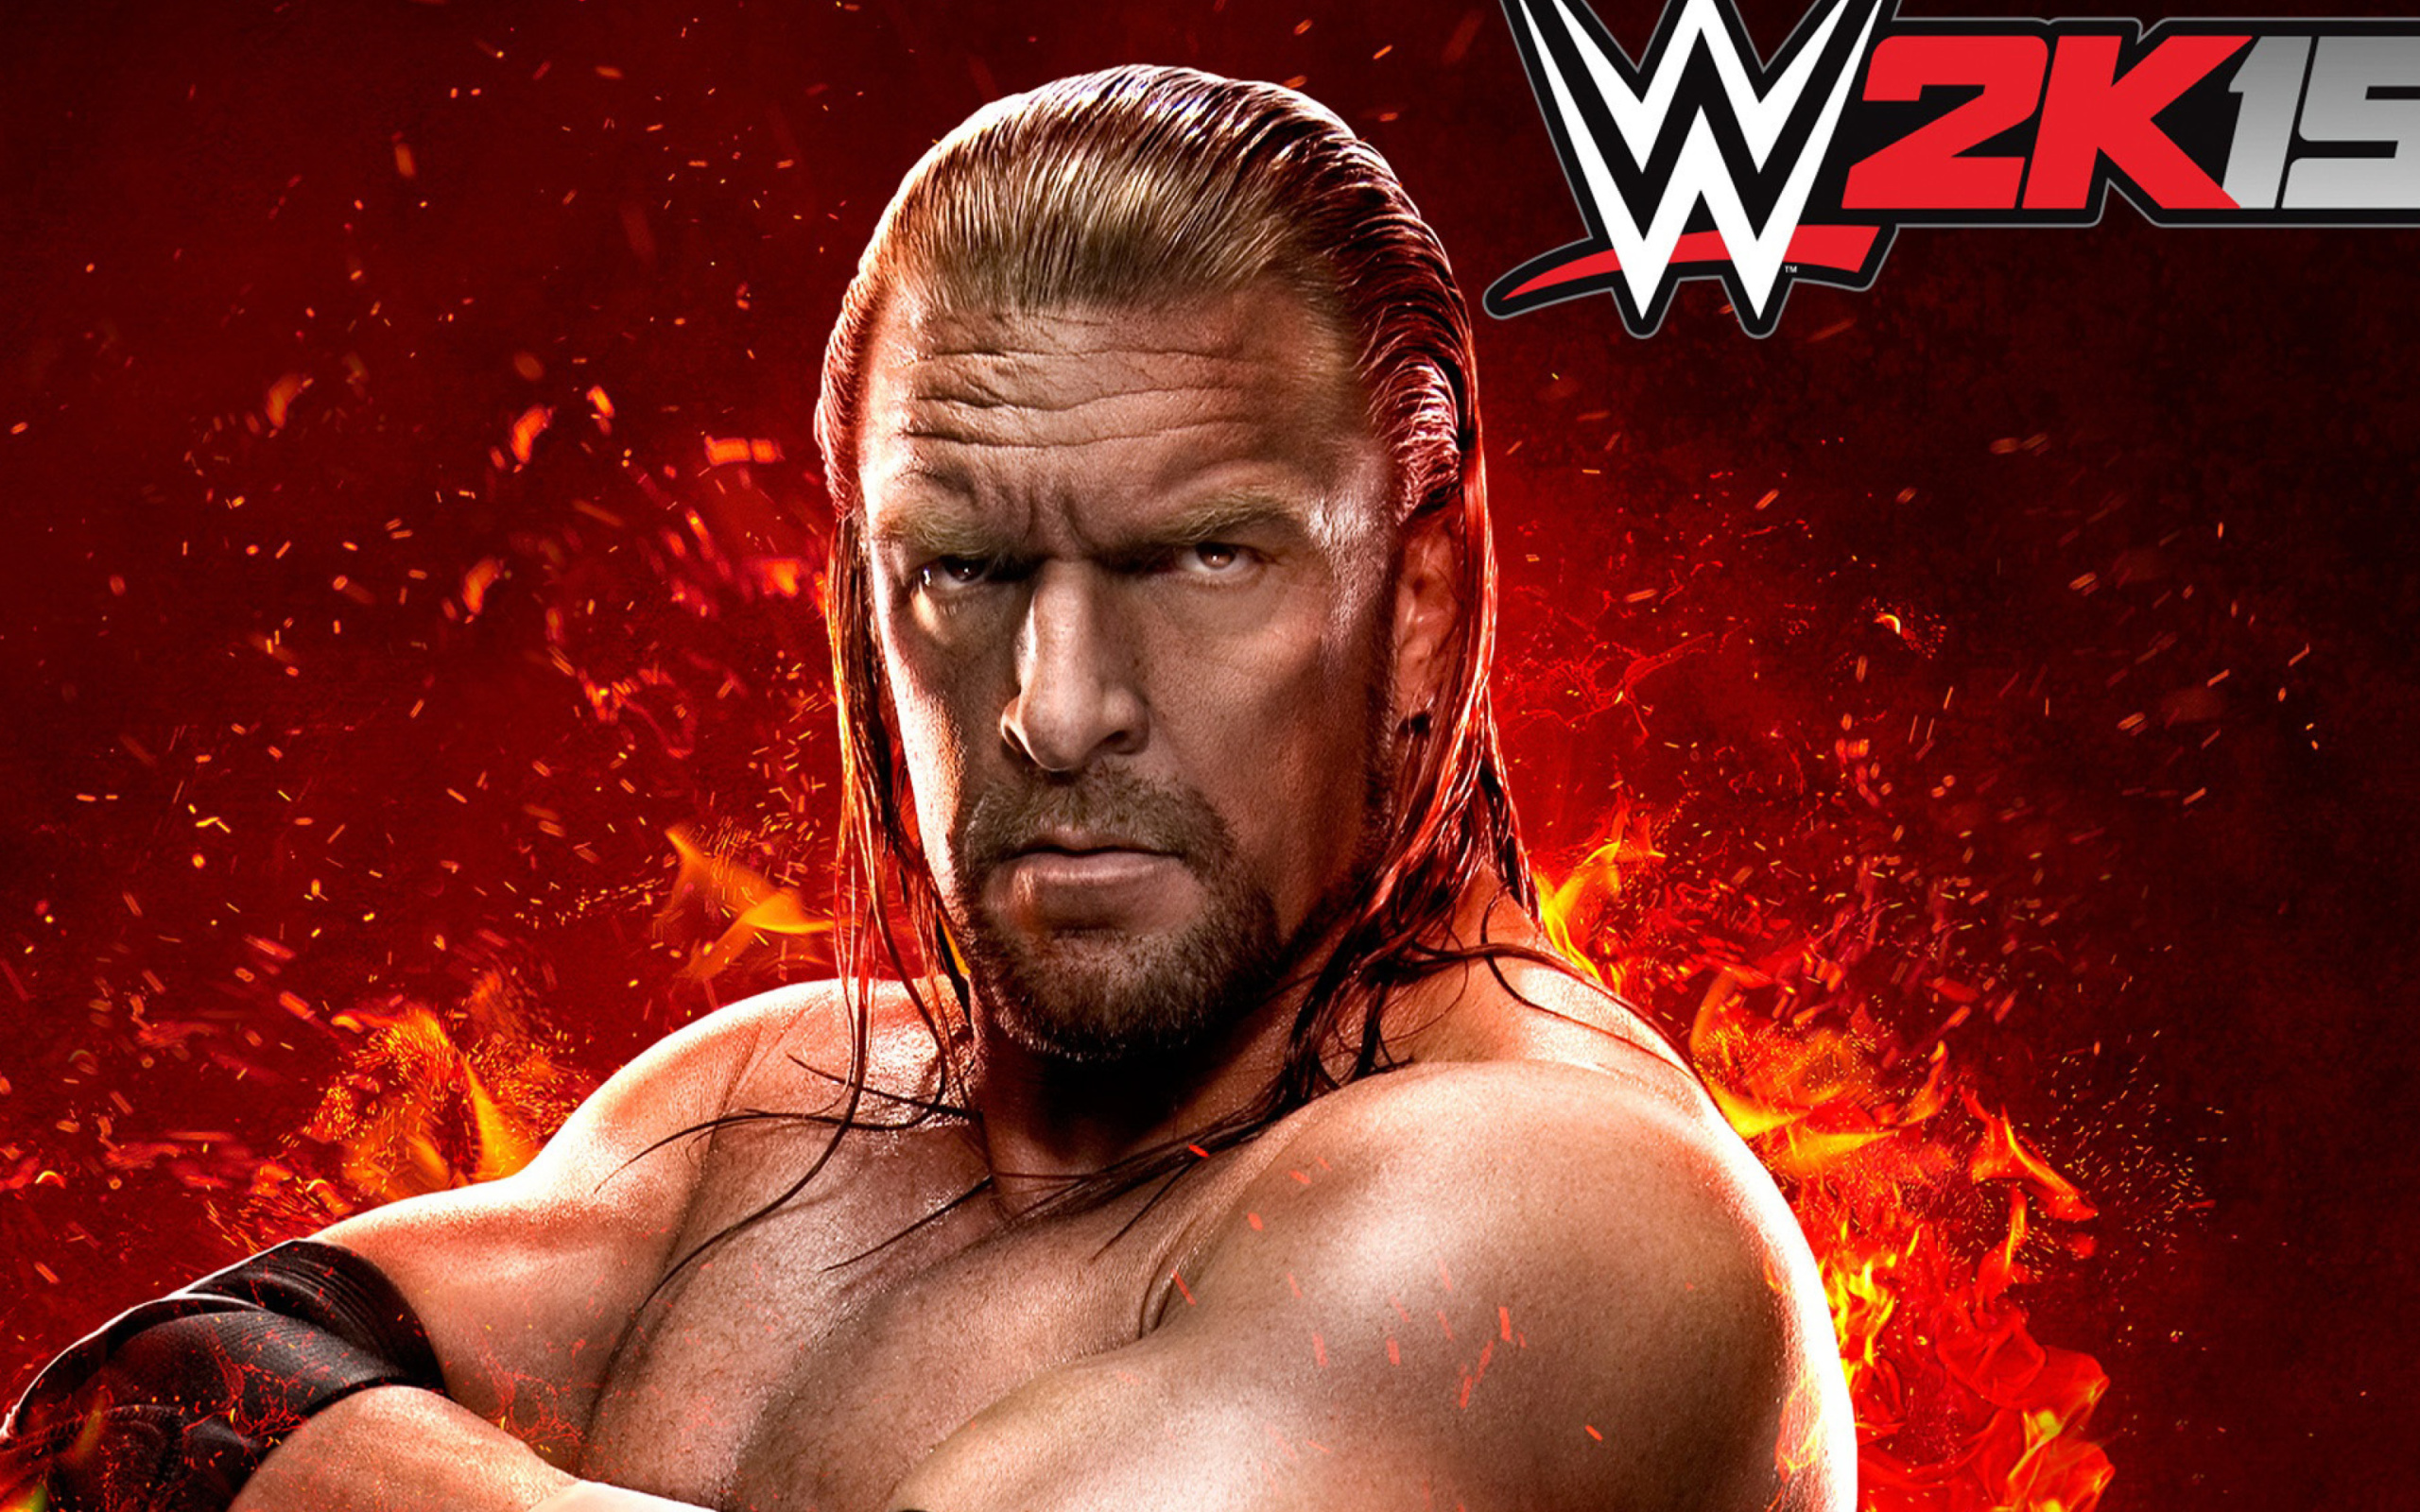 WWE 2K15 Triple H wallpaper 2560x1600